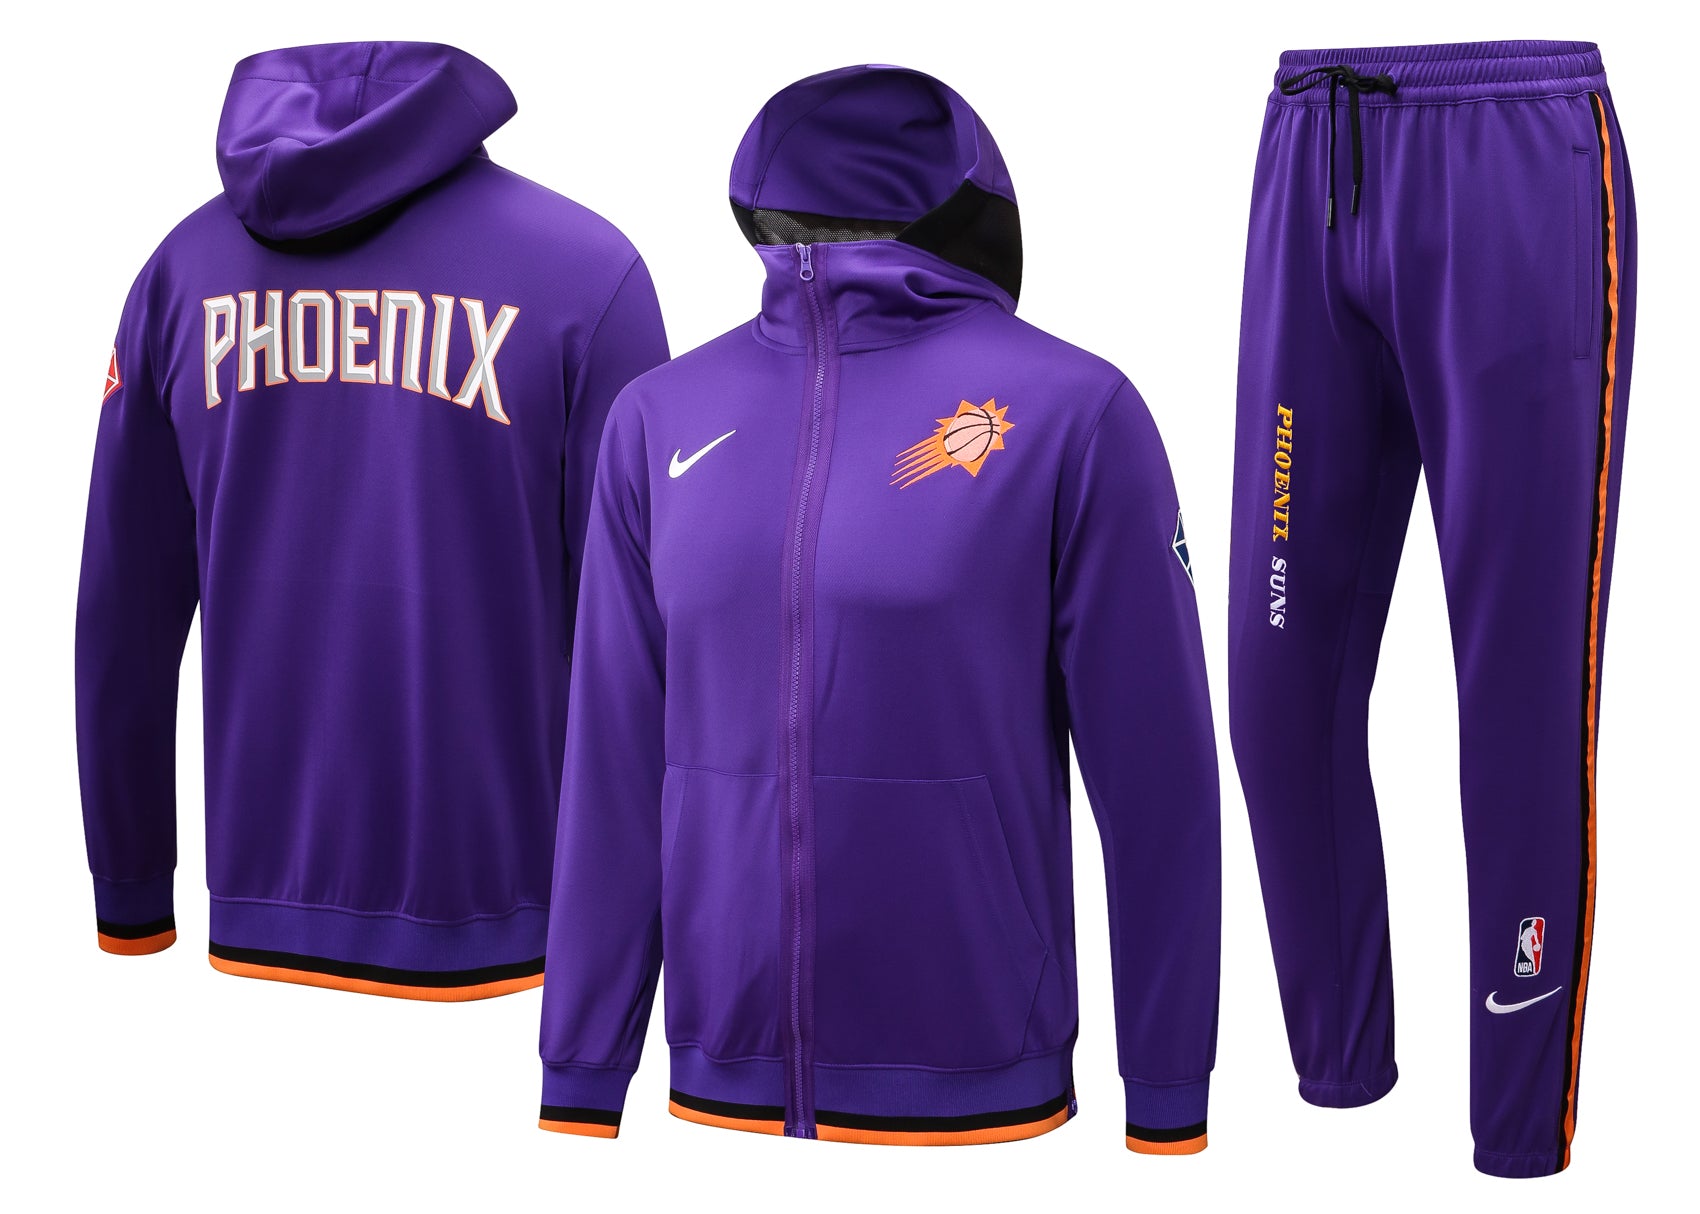 Phoenix purple suit